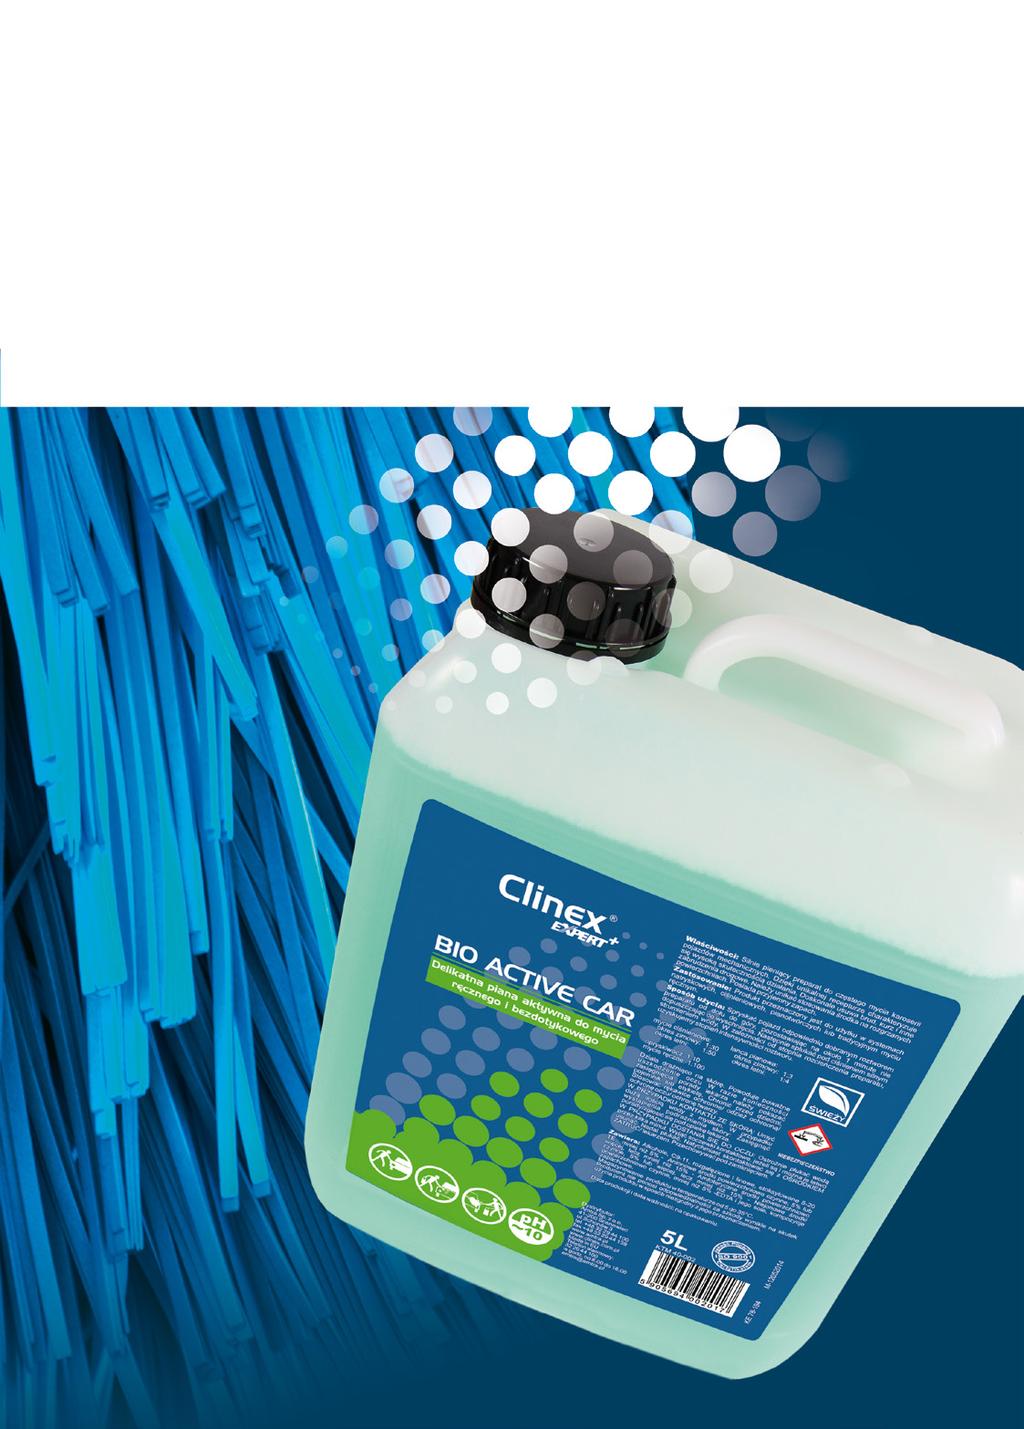 Ofertę produktów dla myjni samochodowych stworzoną przez AMTRA stanowi linia produktów CLINEX Expert+.